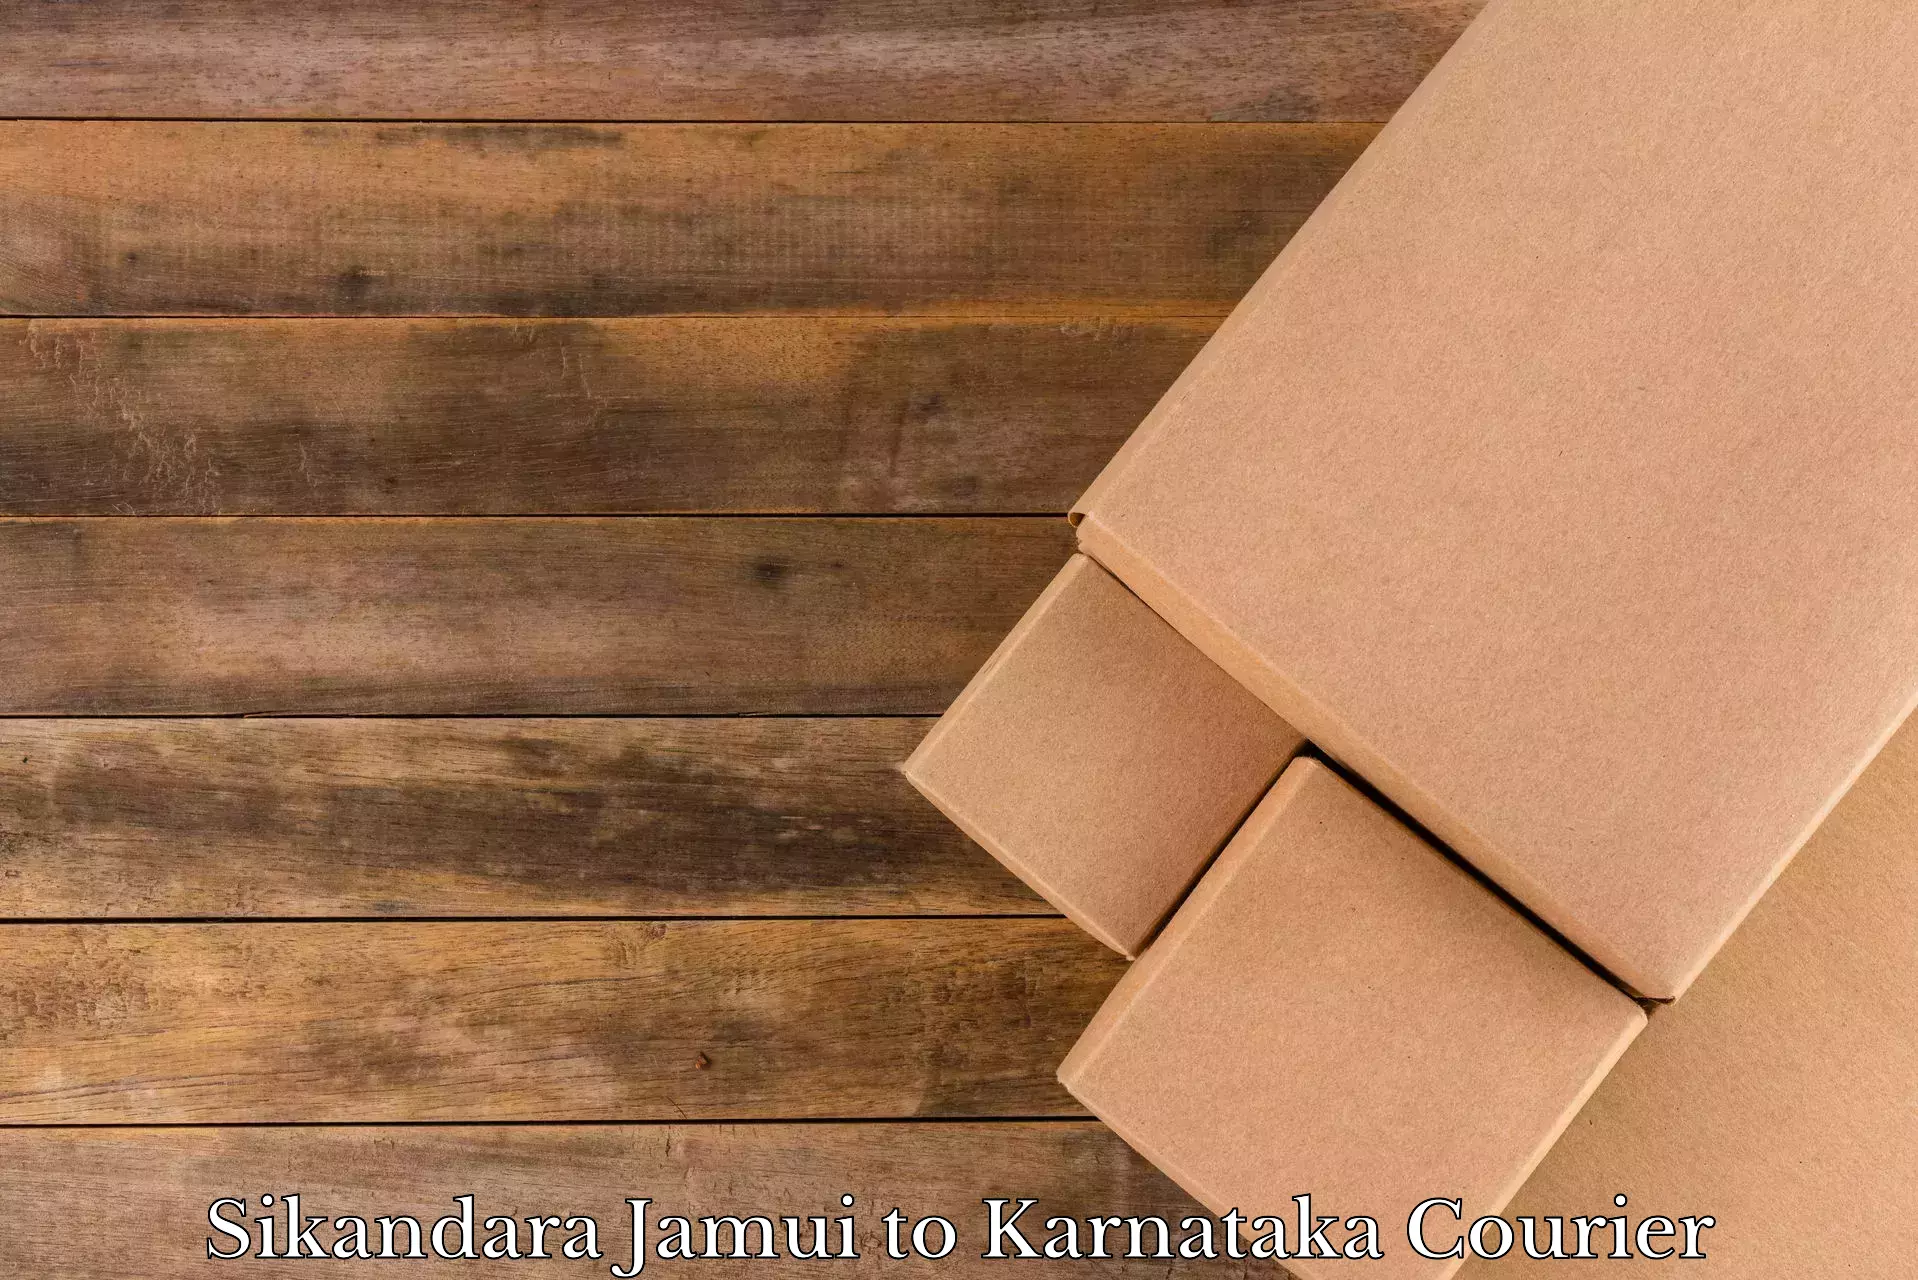 Moving and packing experts Sikandara Jamui to Kanjarakatte